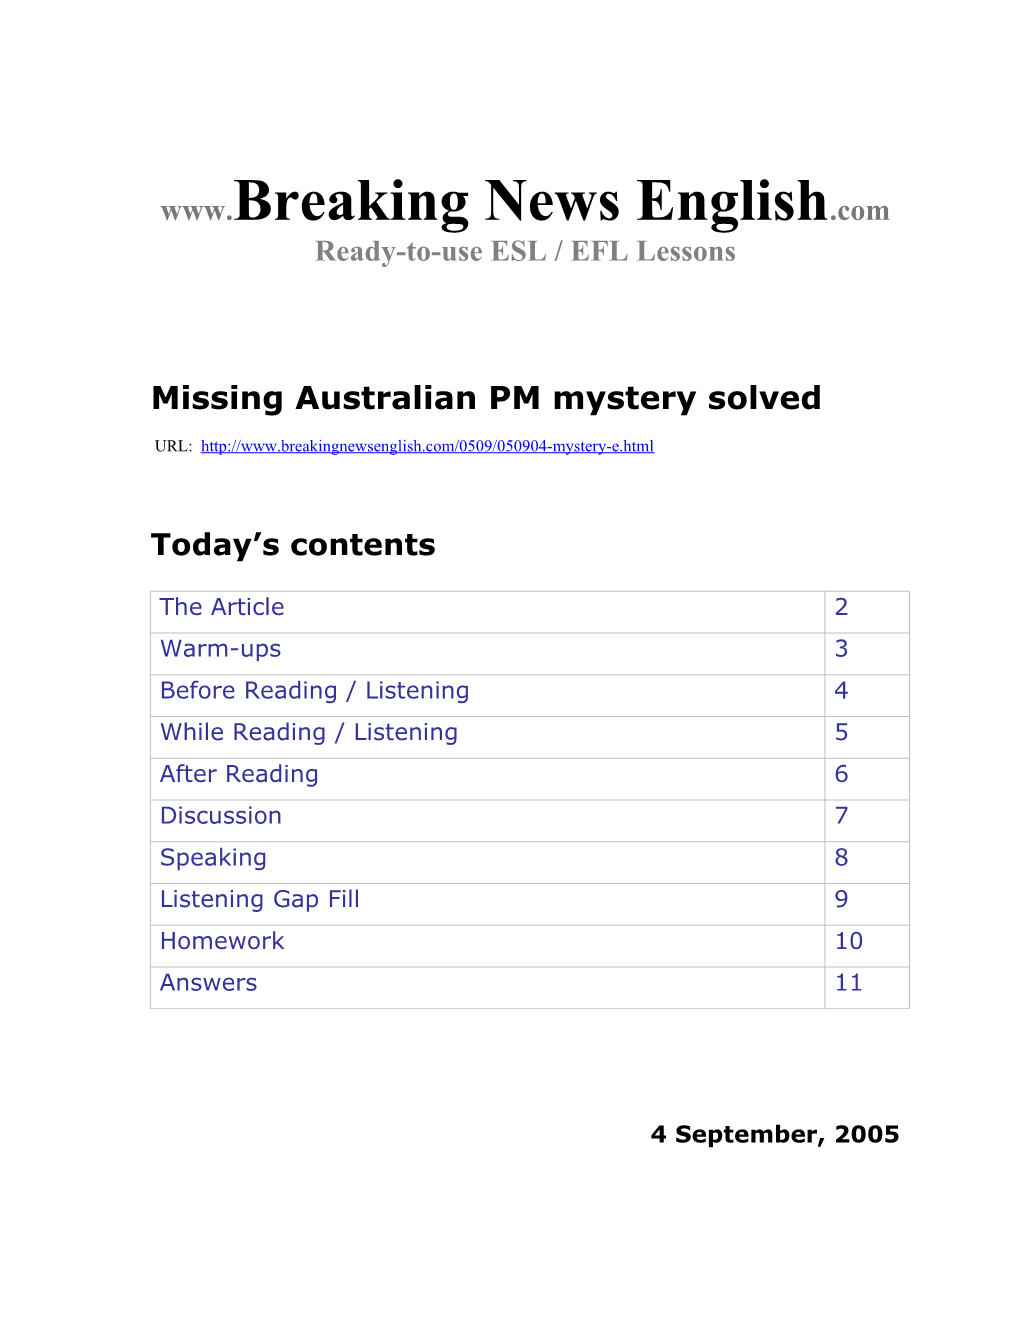 Missing Australian PM Mystery Solved